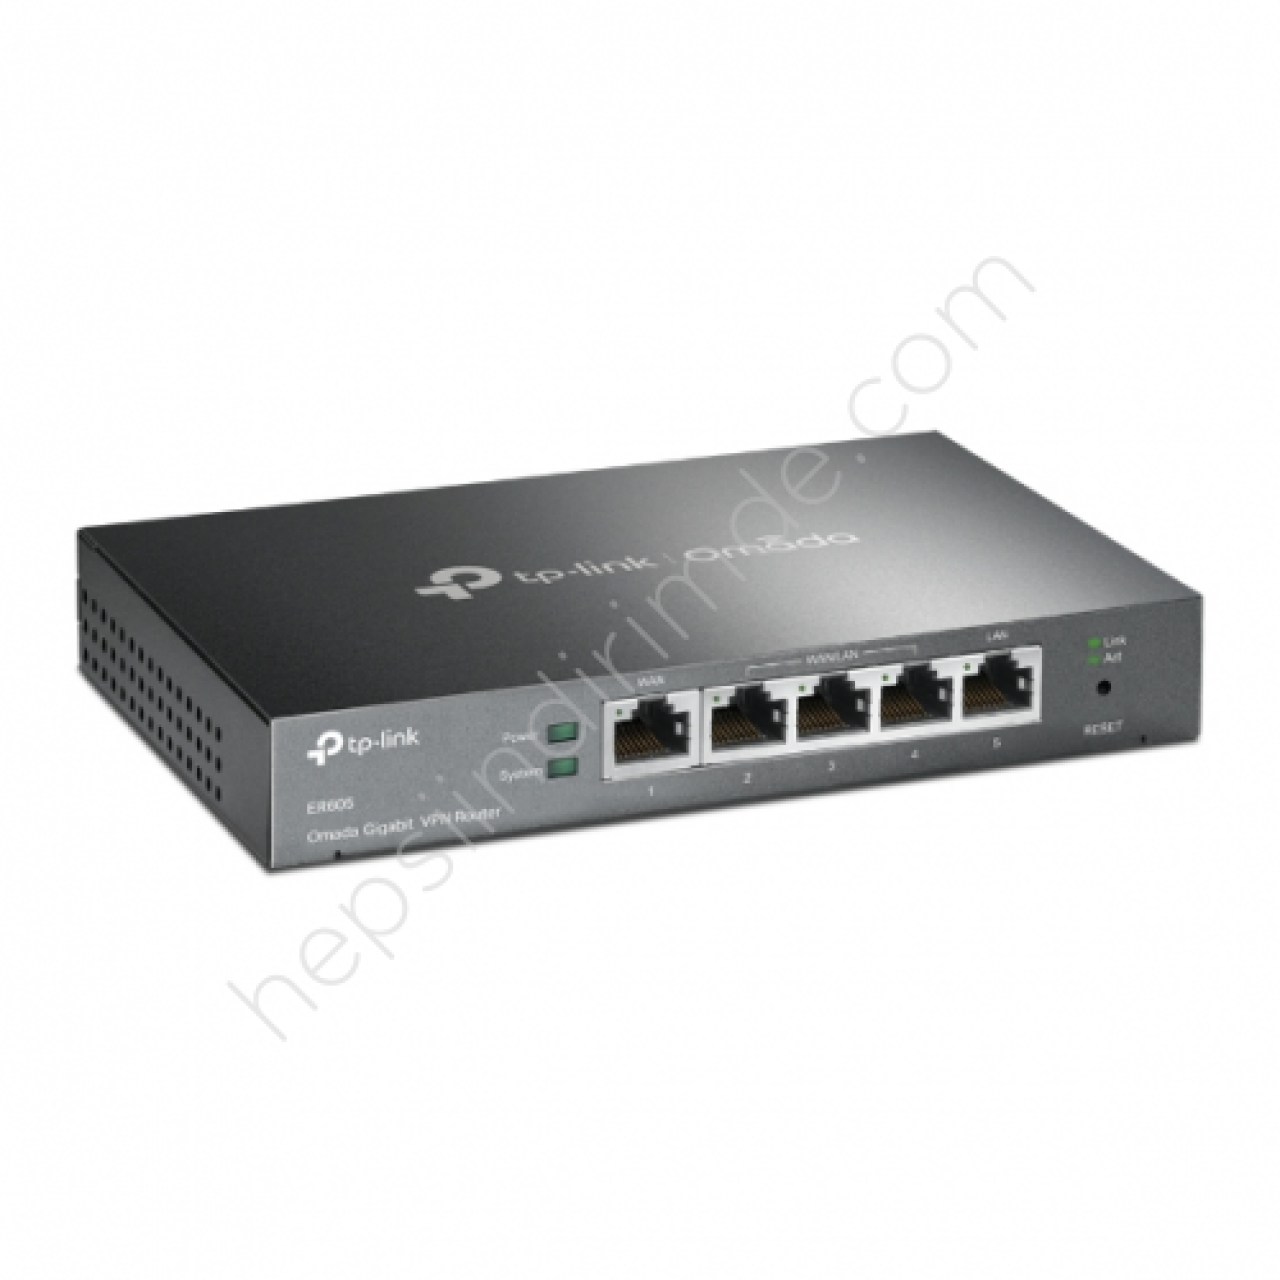 TP-LINK ER605 WAN VPN Gigabit Load Balance Router